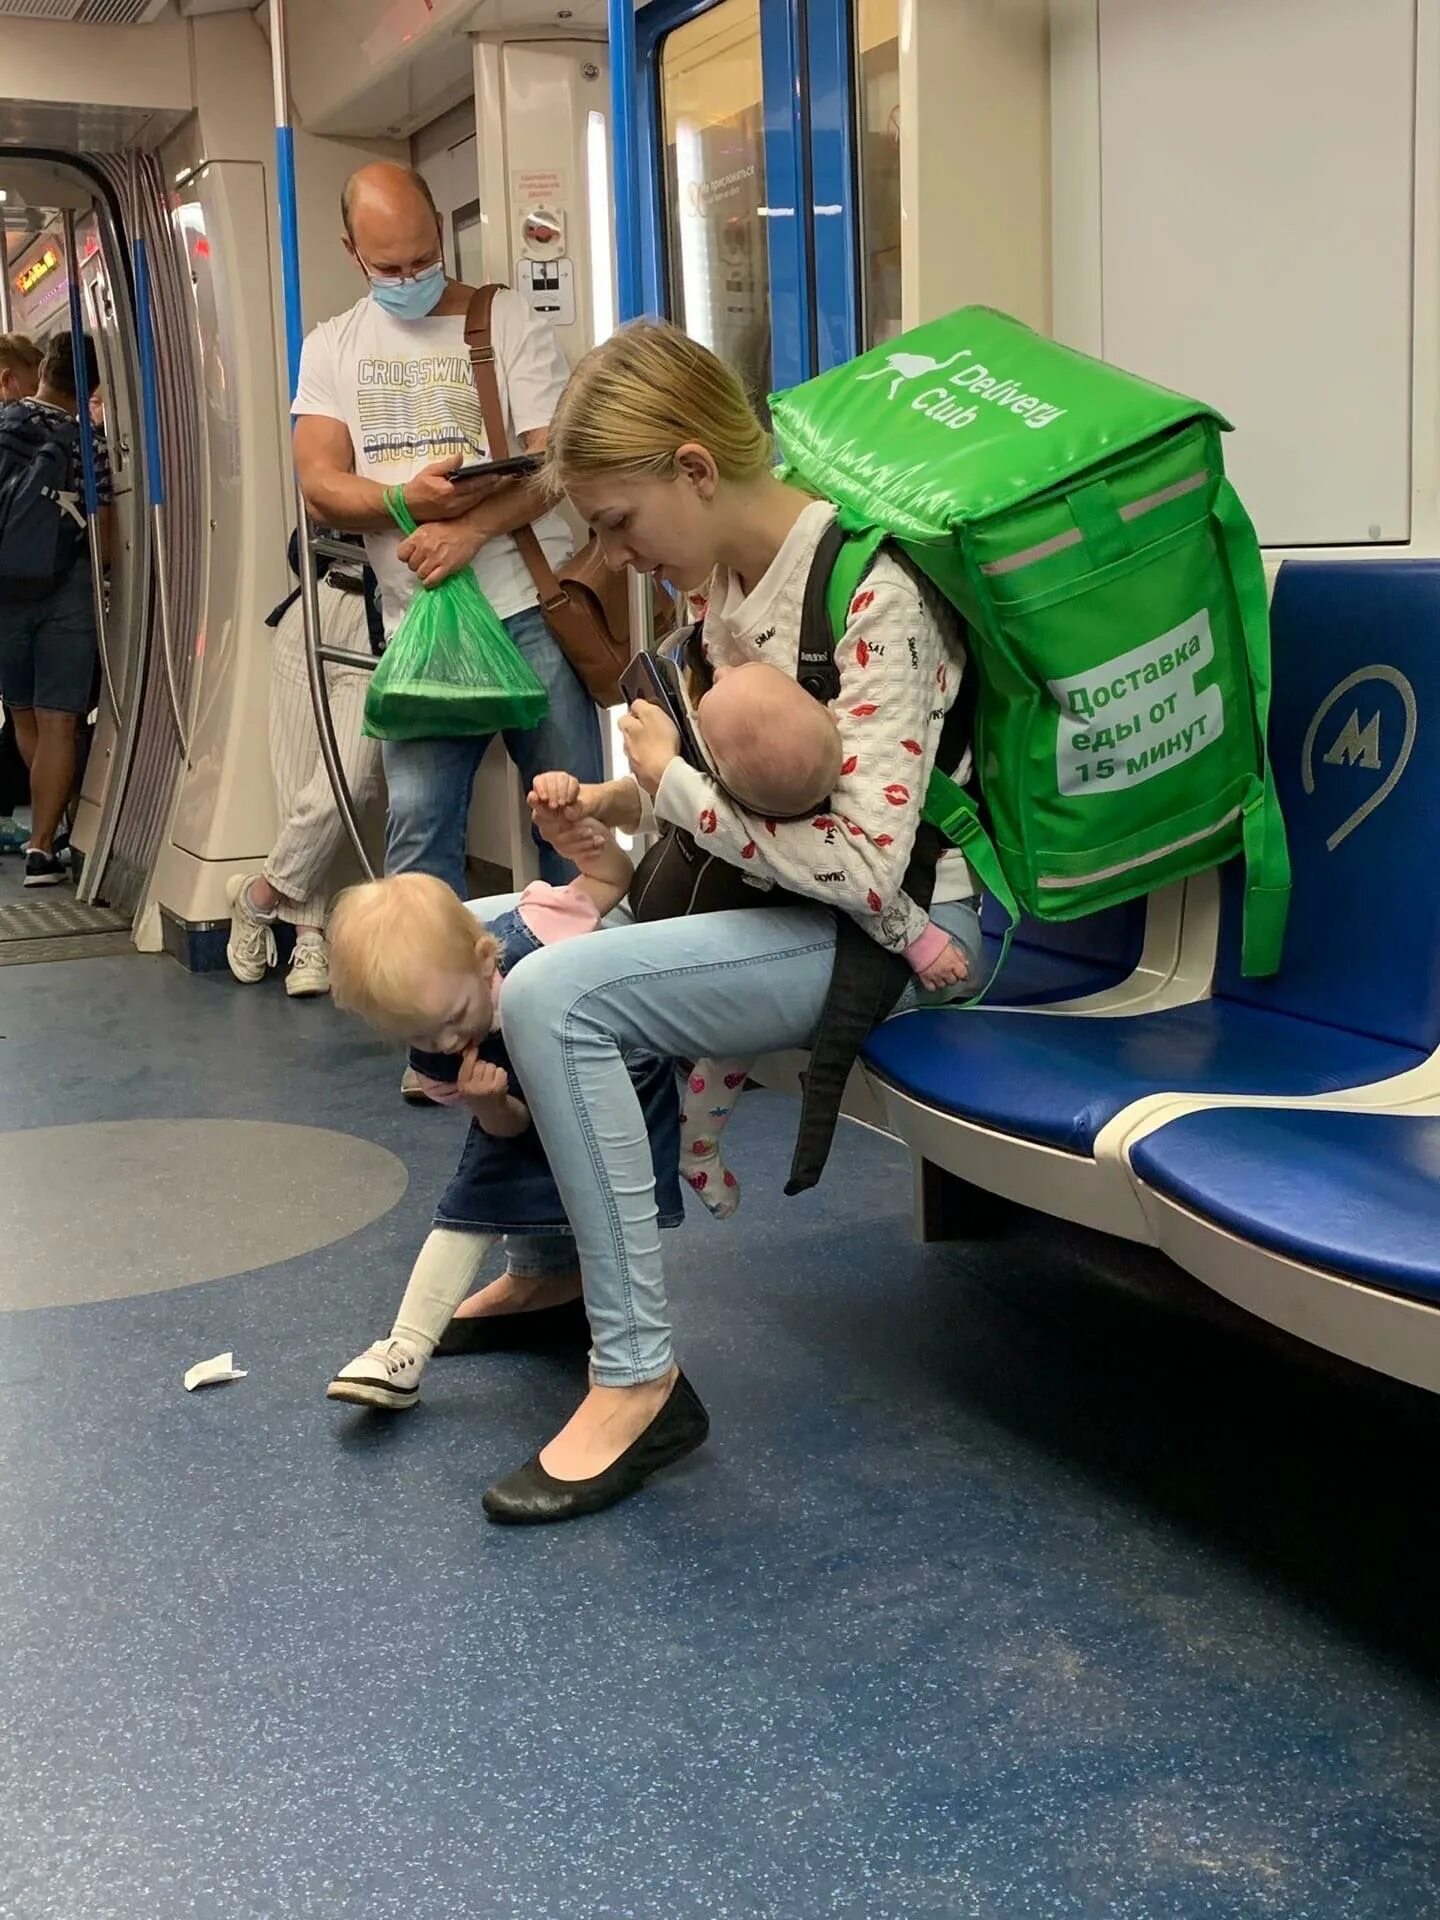 Мамина доставка. Мать с ребенком в метро. Женщина с ребенком в метро. Девушка курьер с двумя детьми в метро. Метро для детей.